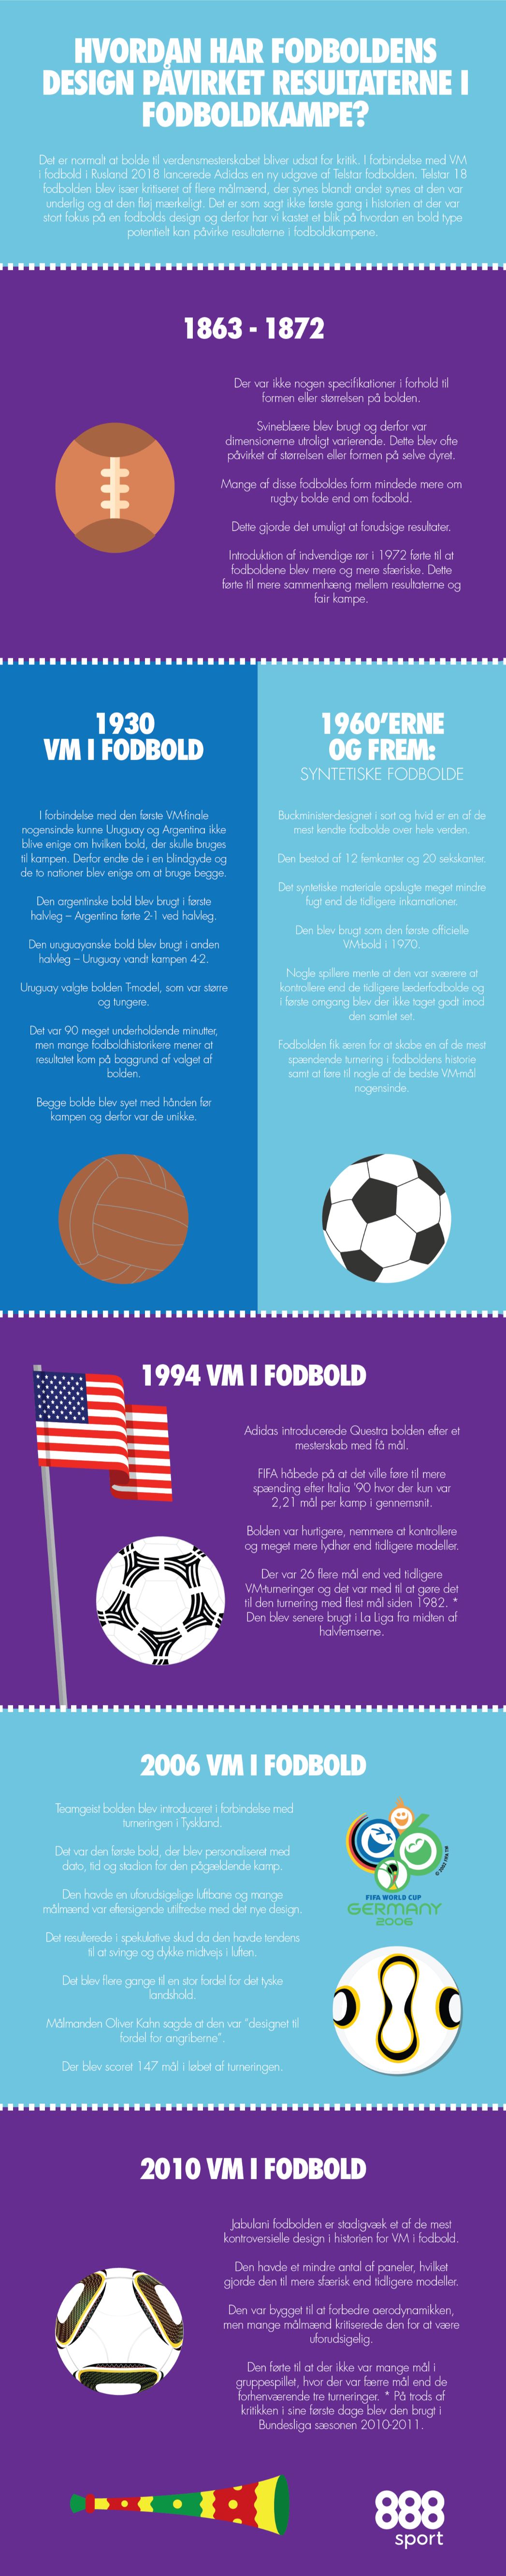 fodboldens design vs resultaterne i fodboldkampe